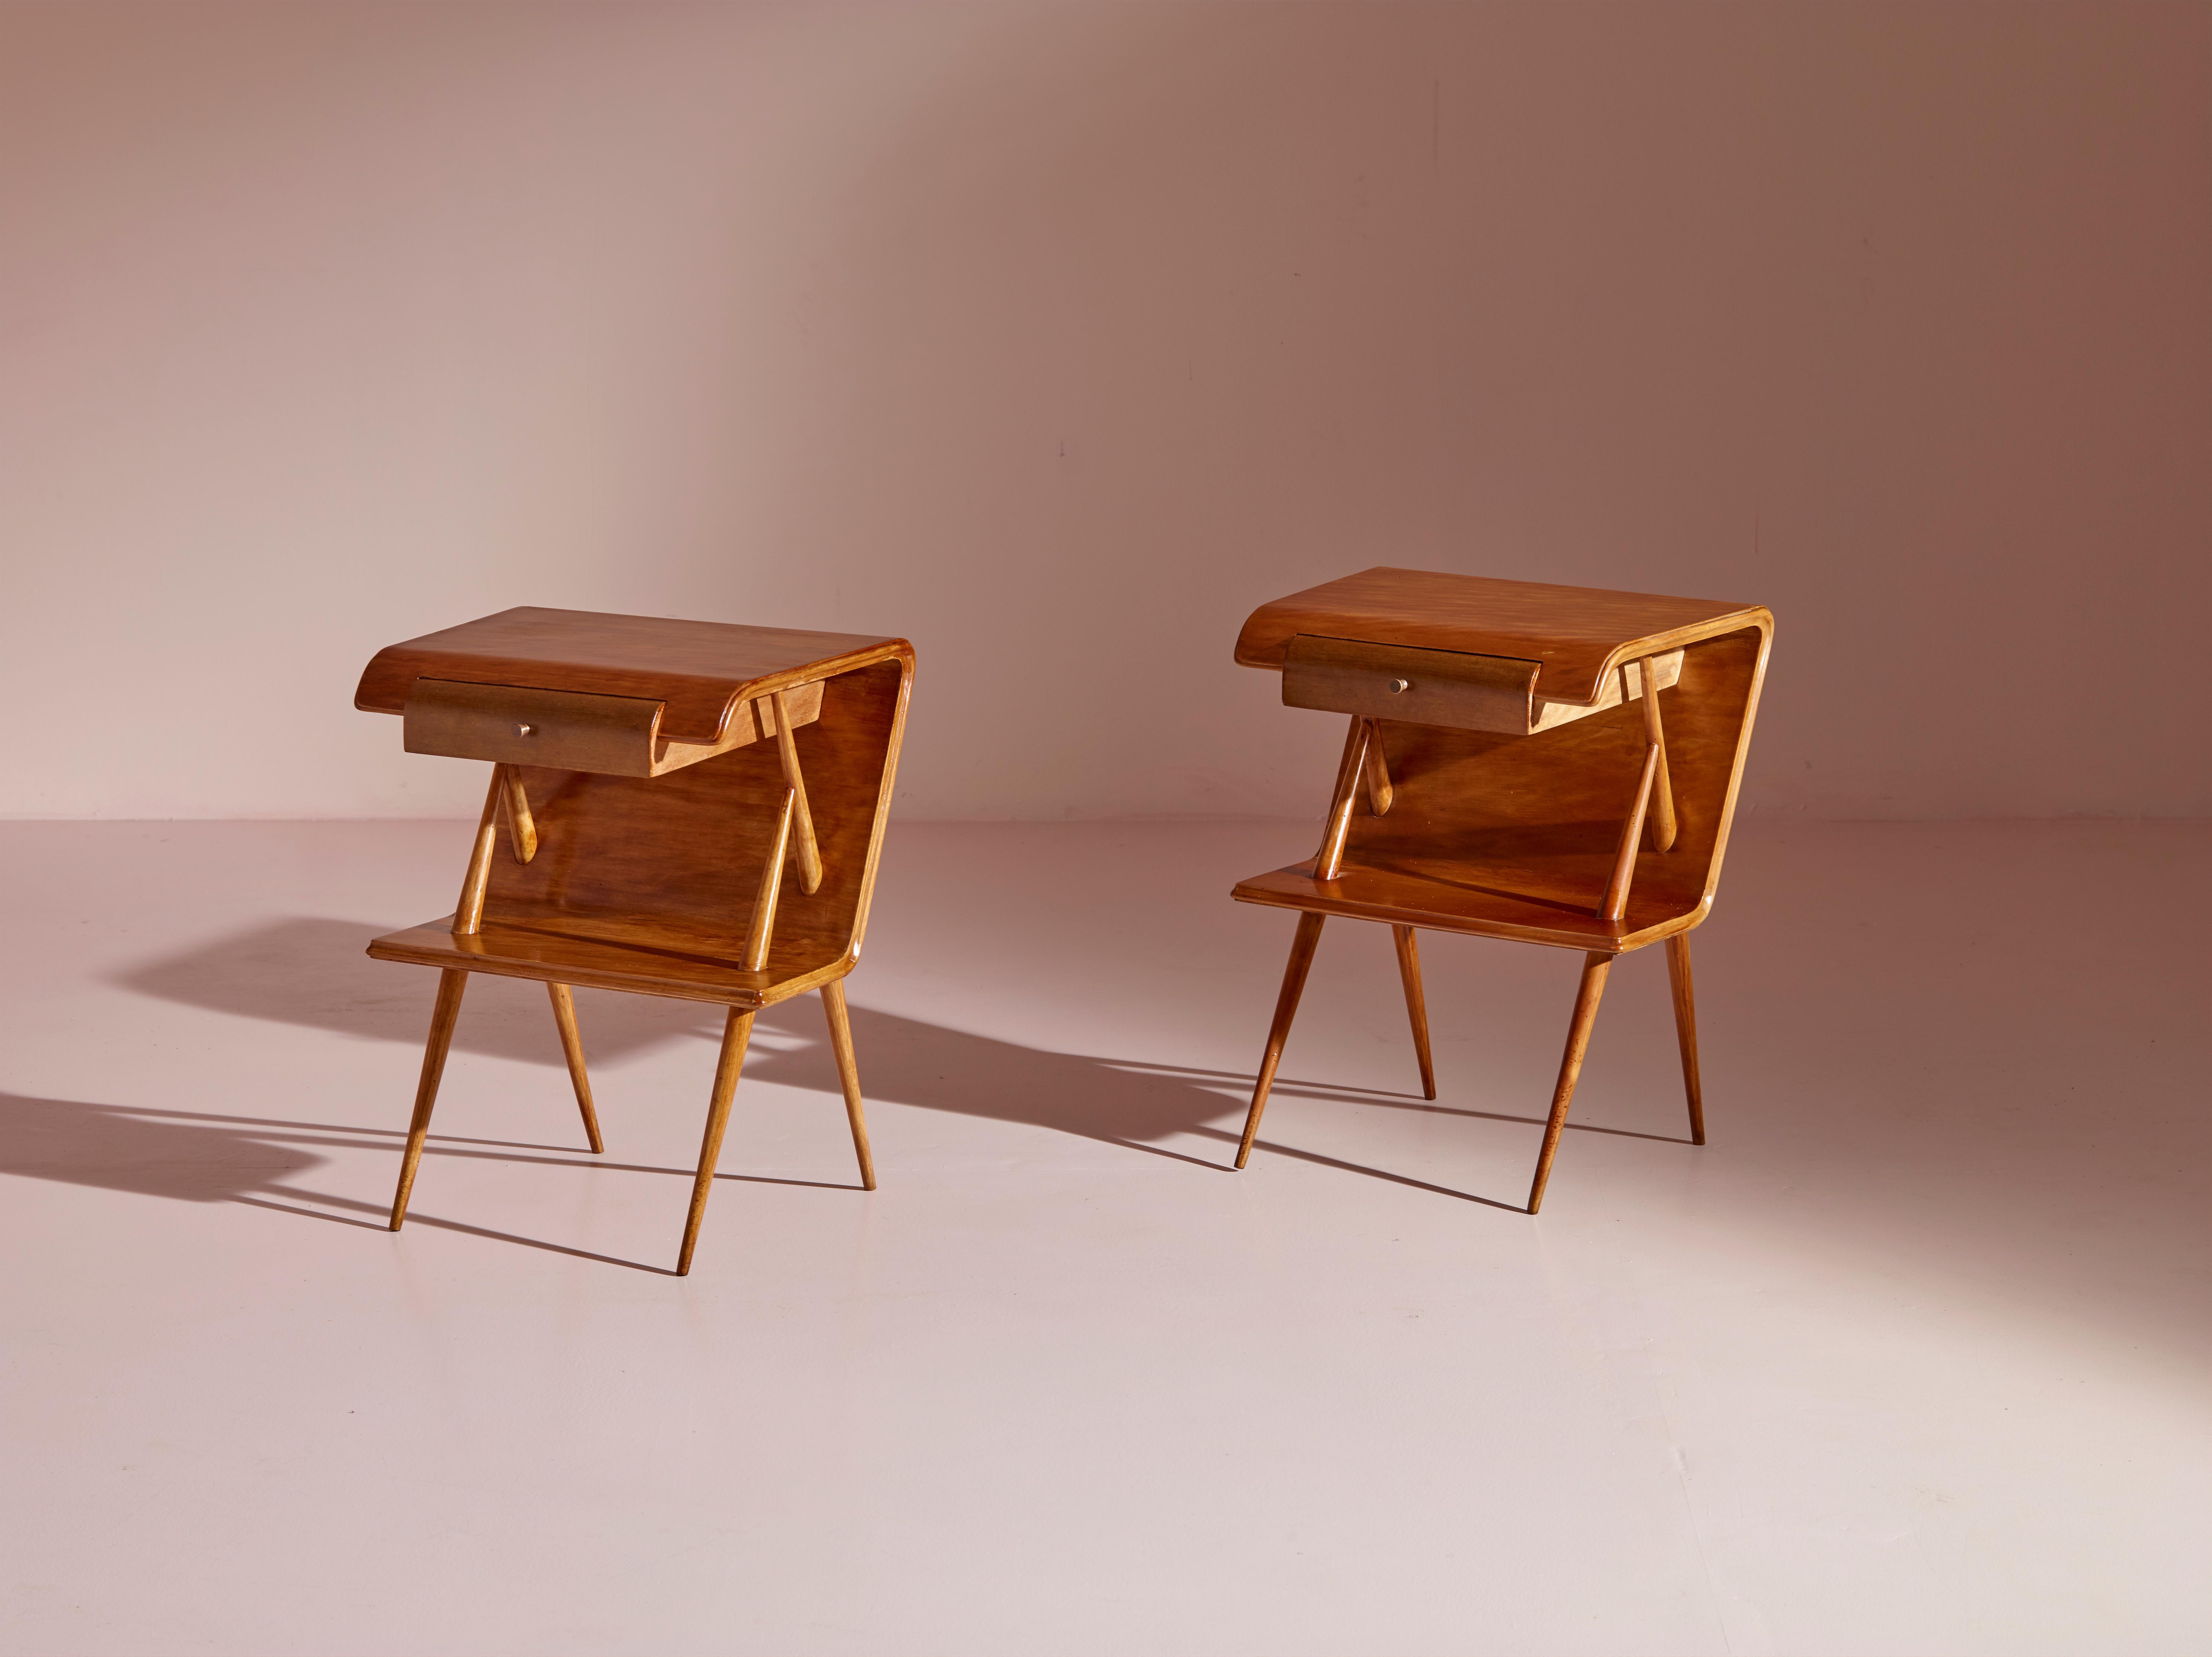 Ein wunderschönes Nachttischpaar aus den 1950er Jahren, das aus Italien stammt. Diese Tische werden fachmännisch mit massiven Ahornbeinen und einer gebogenen Sperrholzstruktur gefertigt.

Die raffinierte Kombination aus Massivholz und Sperrholz